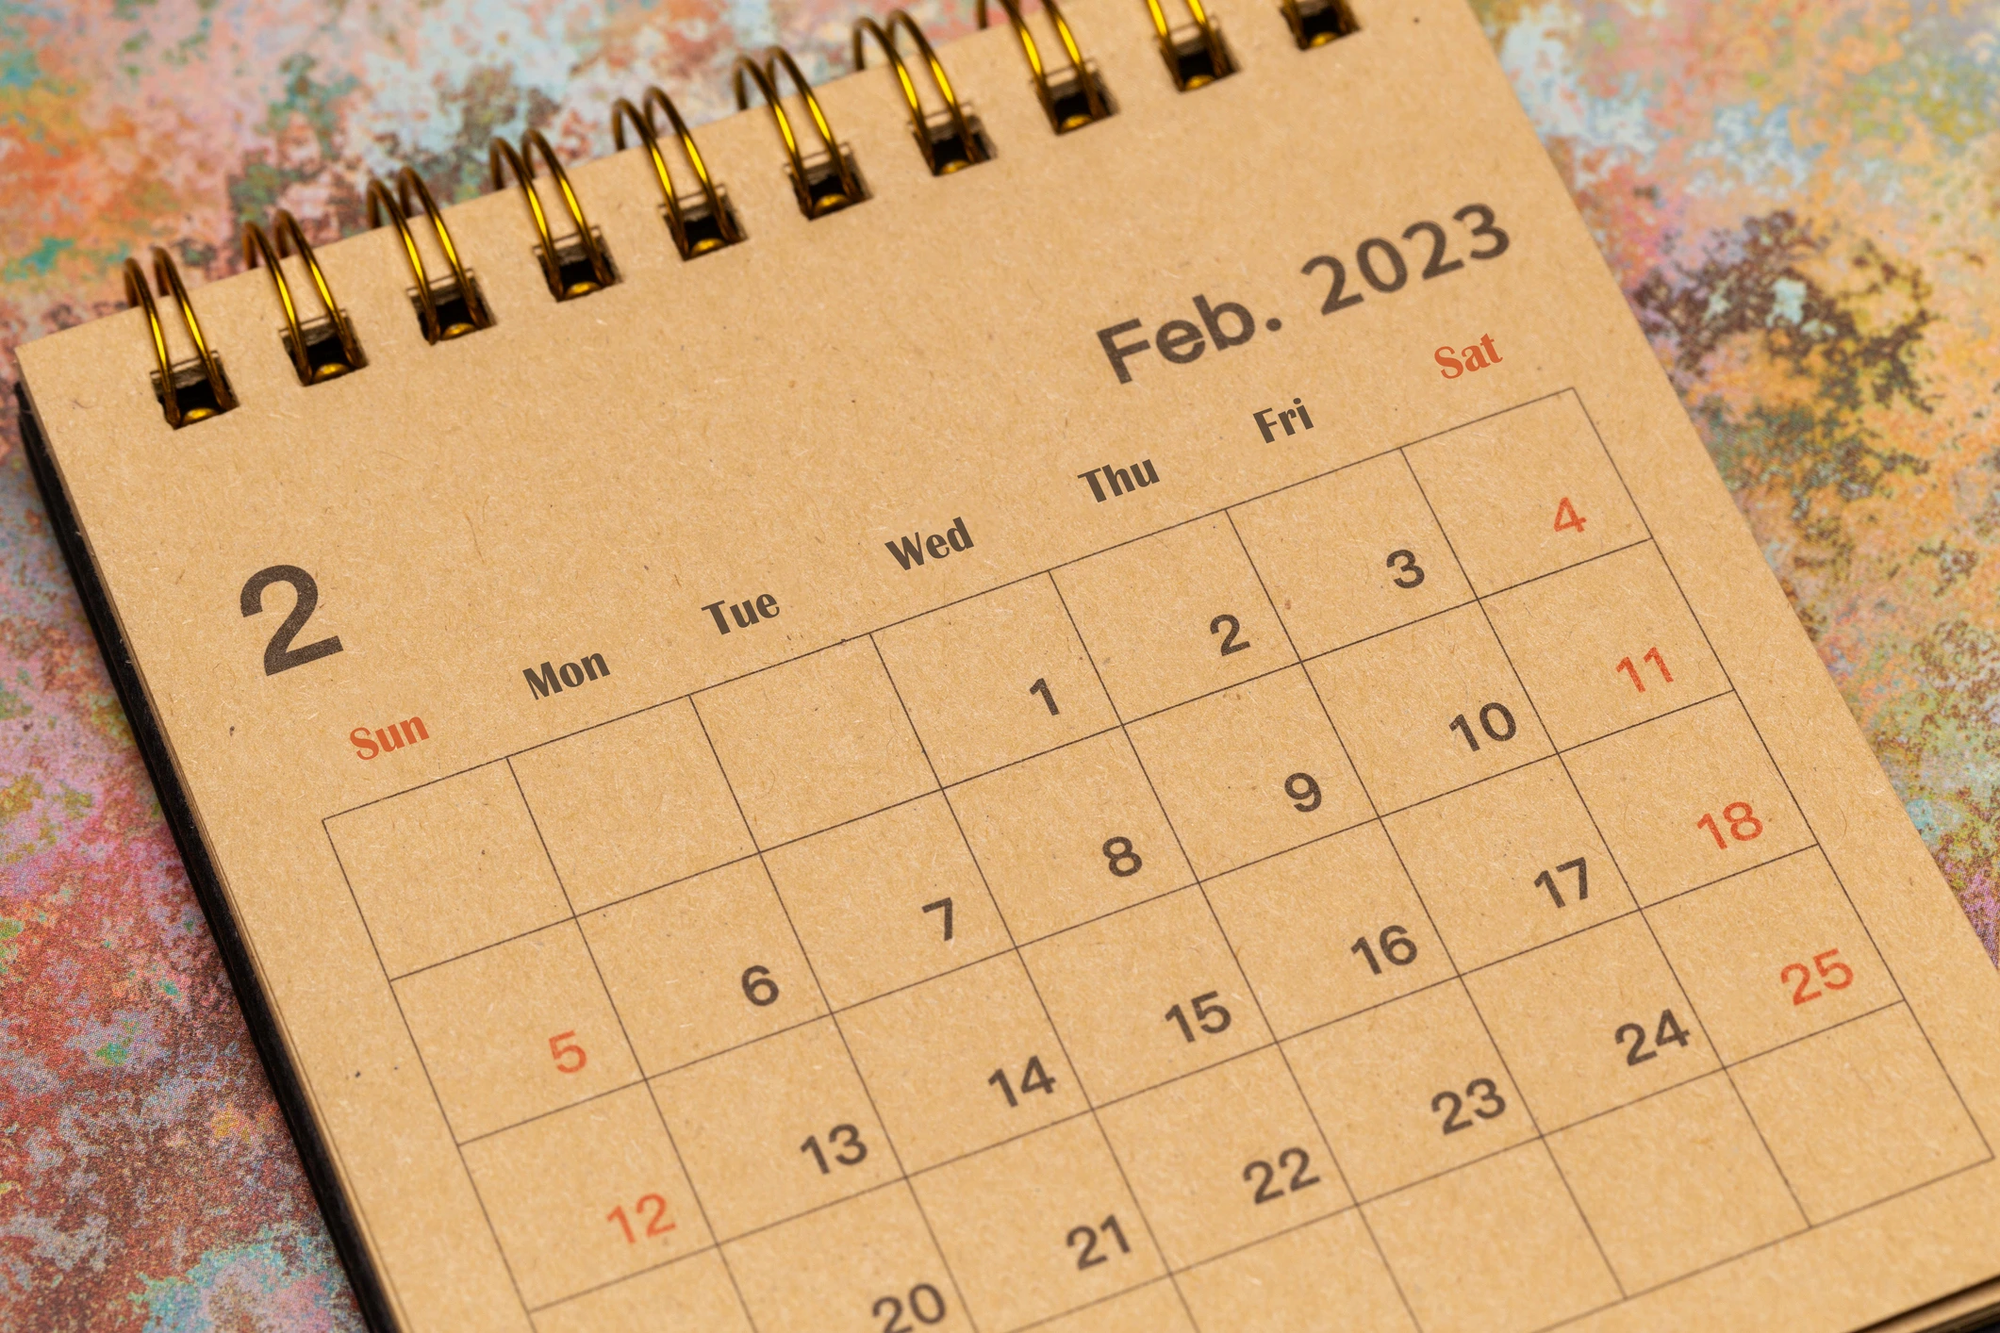 Thật bất ngờ, tháng 2 có 28 ngày, đây là tháng có số ngày ít nhất trong cả năm.